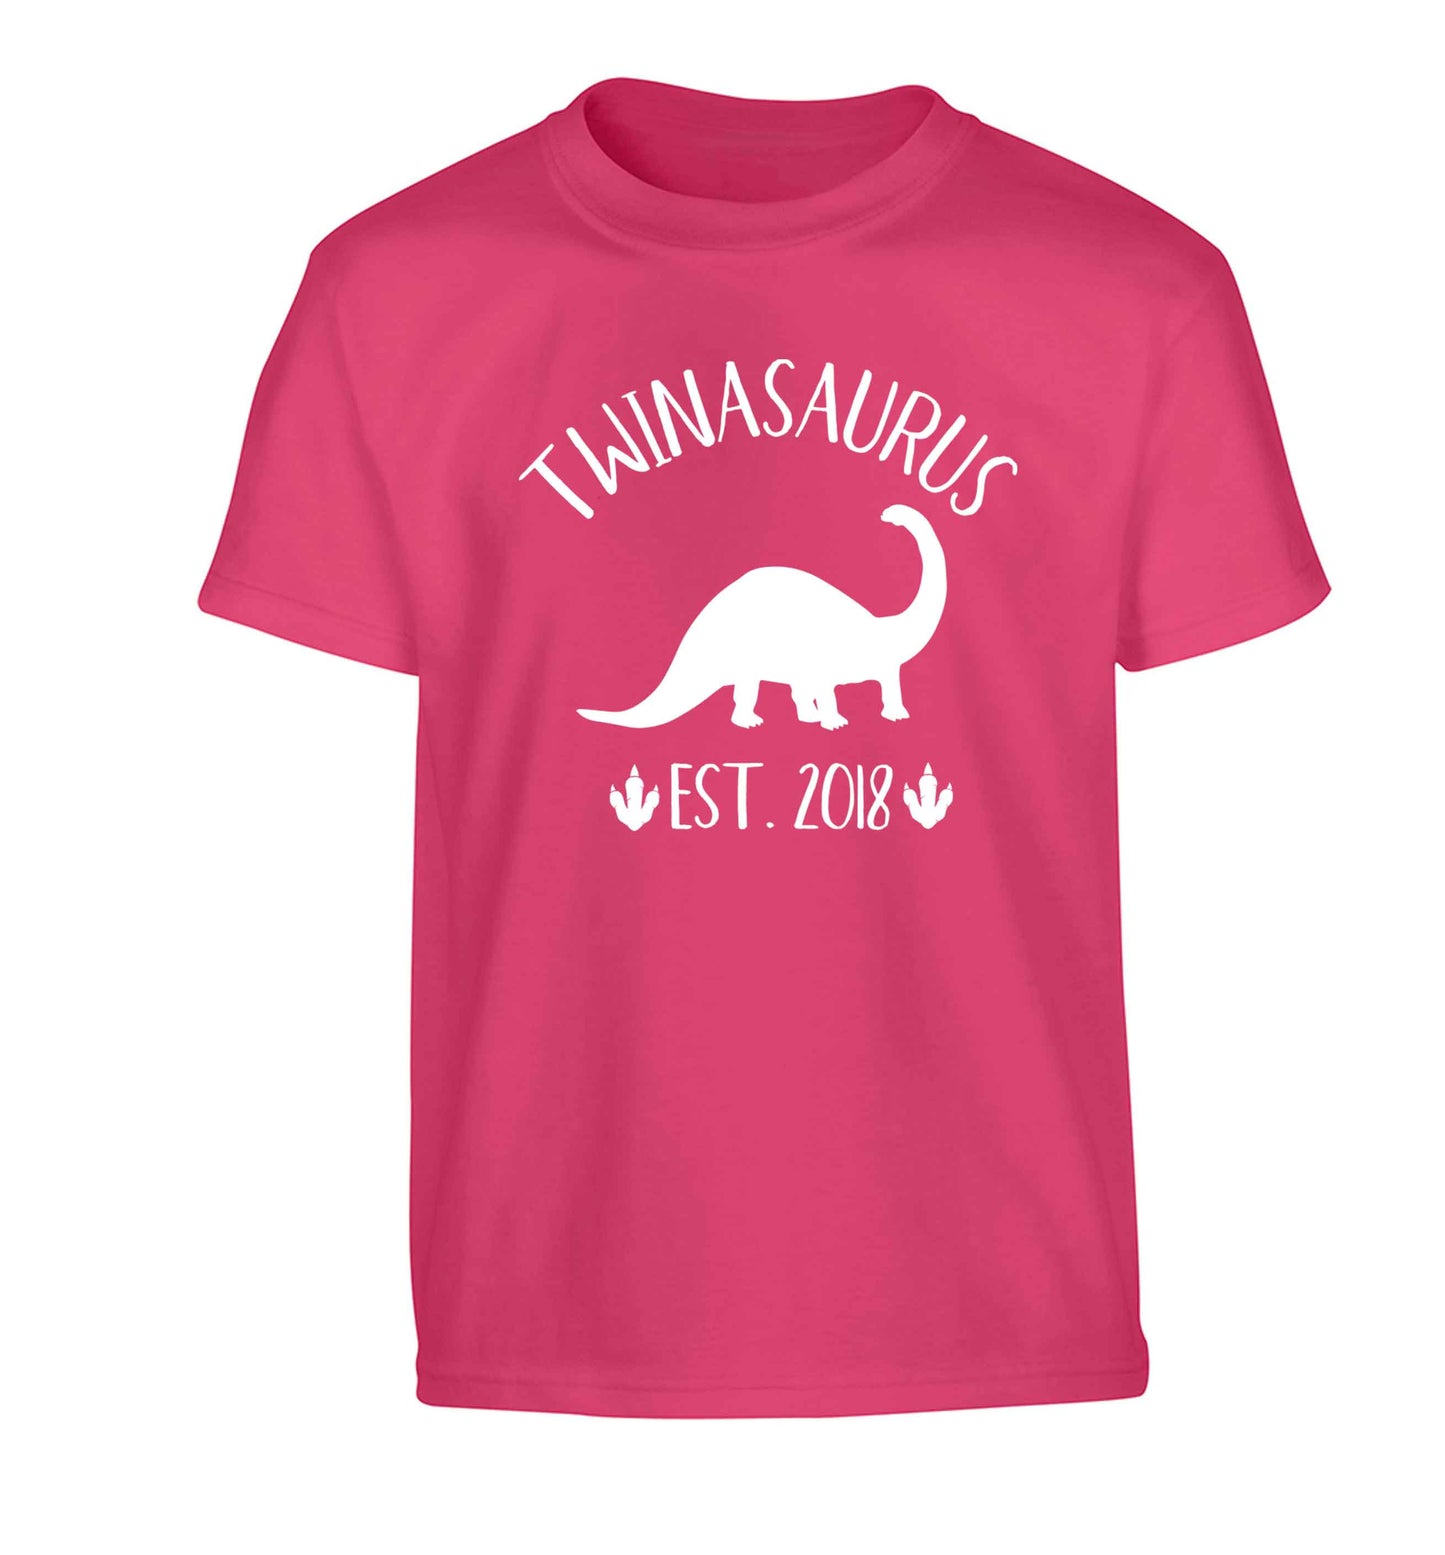 Personalised twinasaurus since (custom date) Children's pink Tshirt 12-13 Years